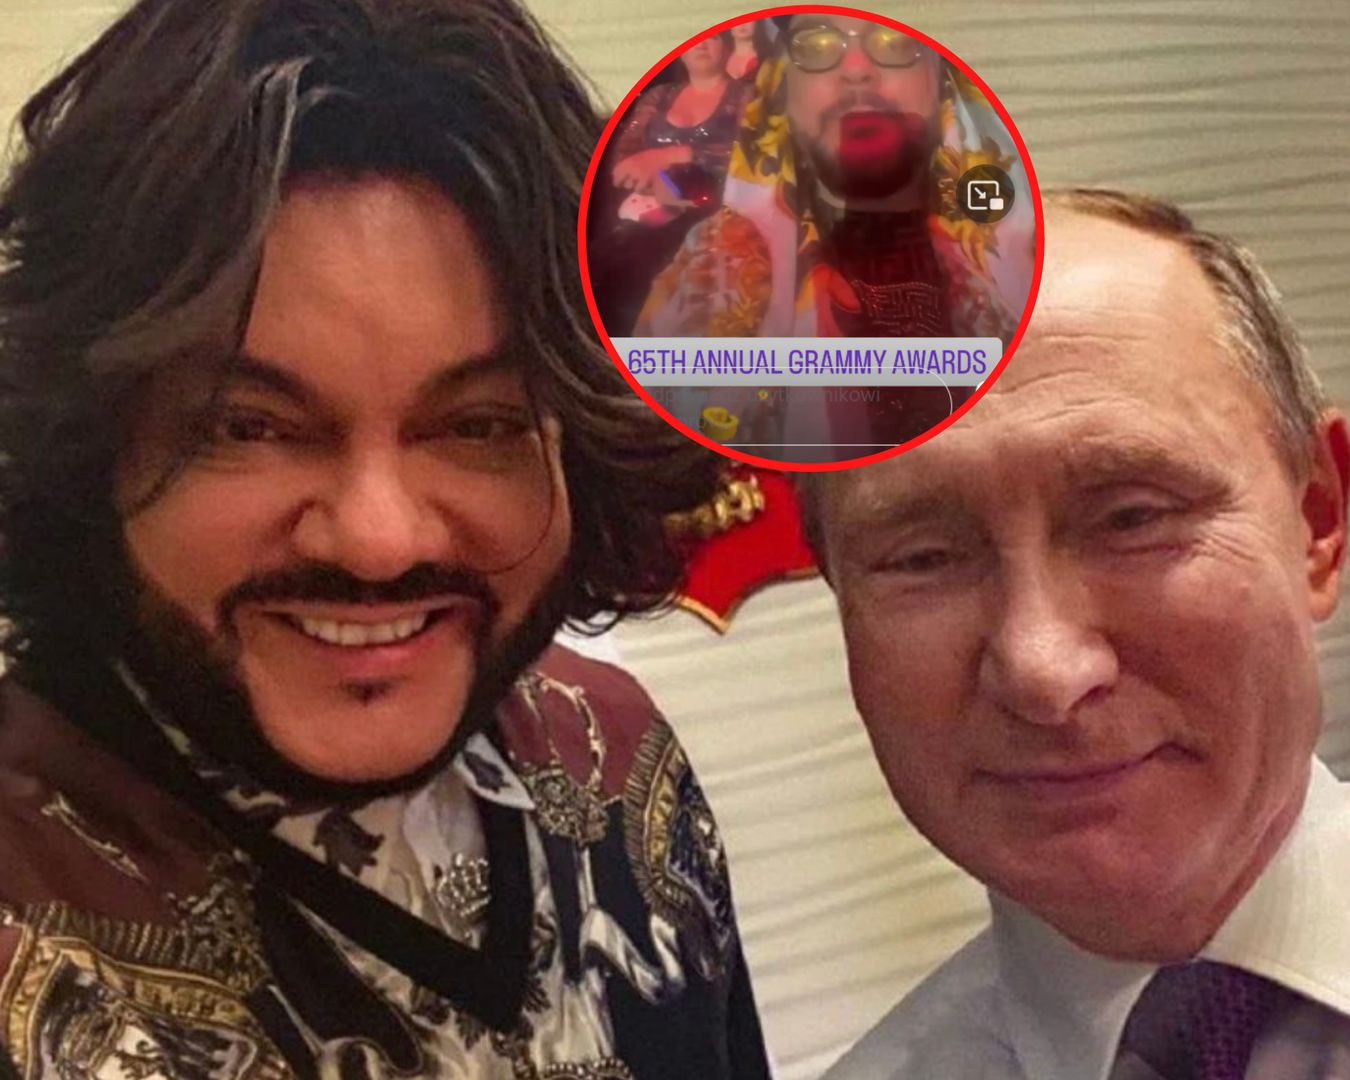 Gorący zwolennik Putina na imprezie Grammy. "Powinien mieć zakaz wstępu do USA!"